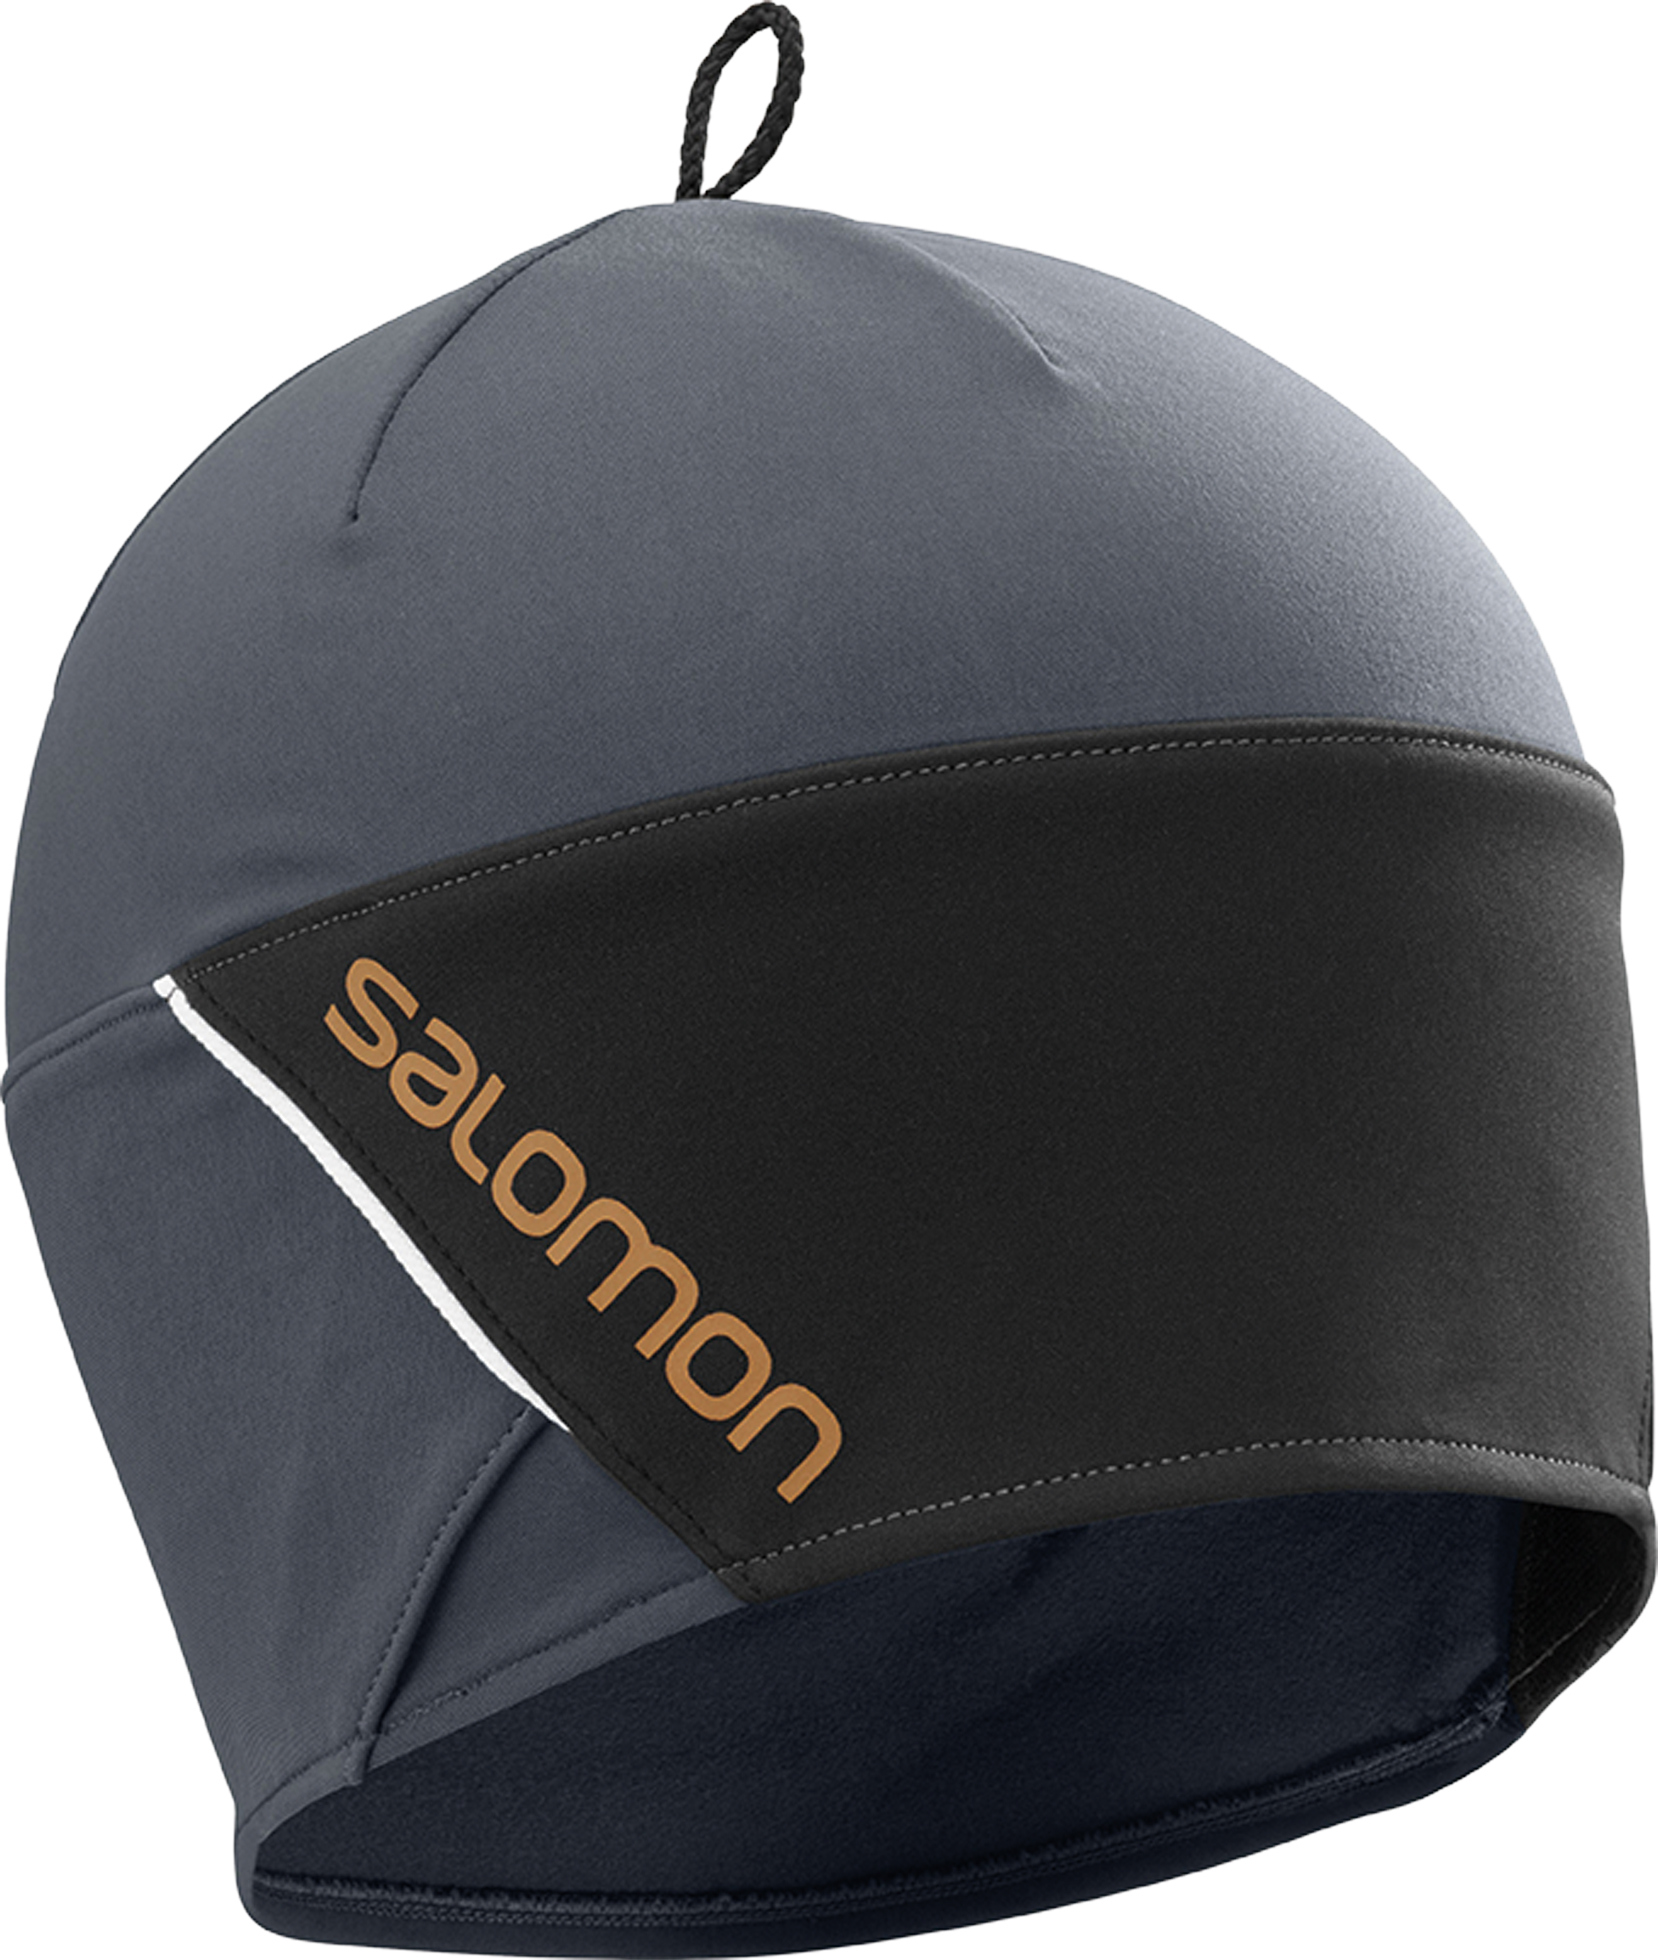 Visita lo Store di SalomonSALOMON RS Beanie Unisex Adulto Berretto per Escursioni e Allenamenti 